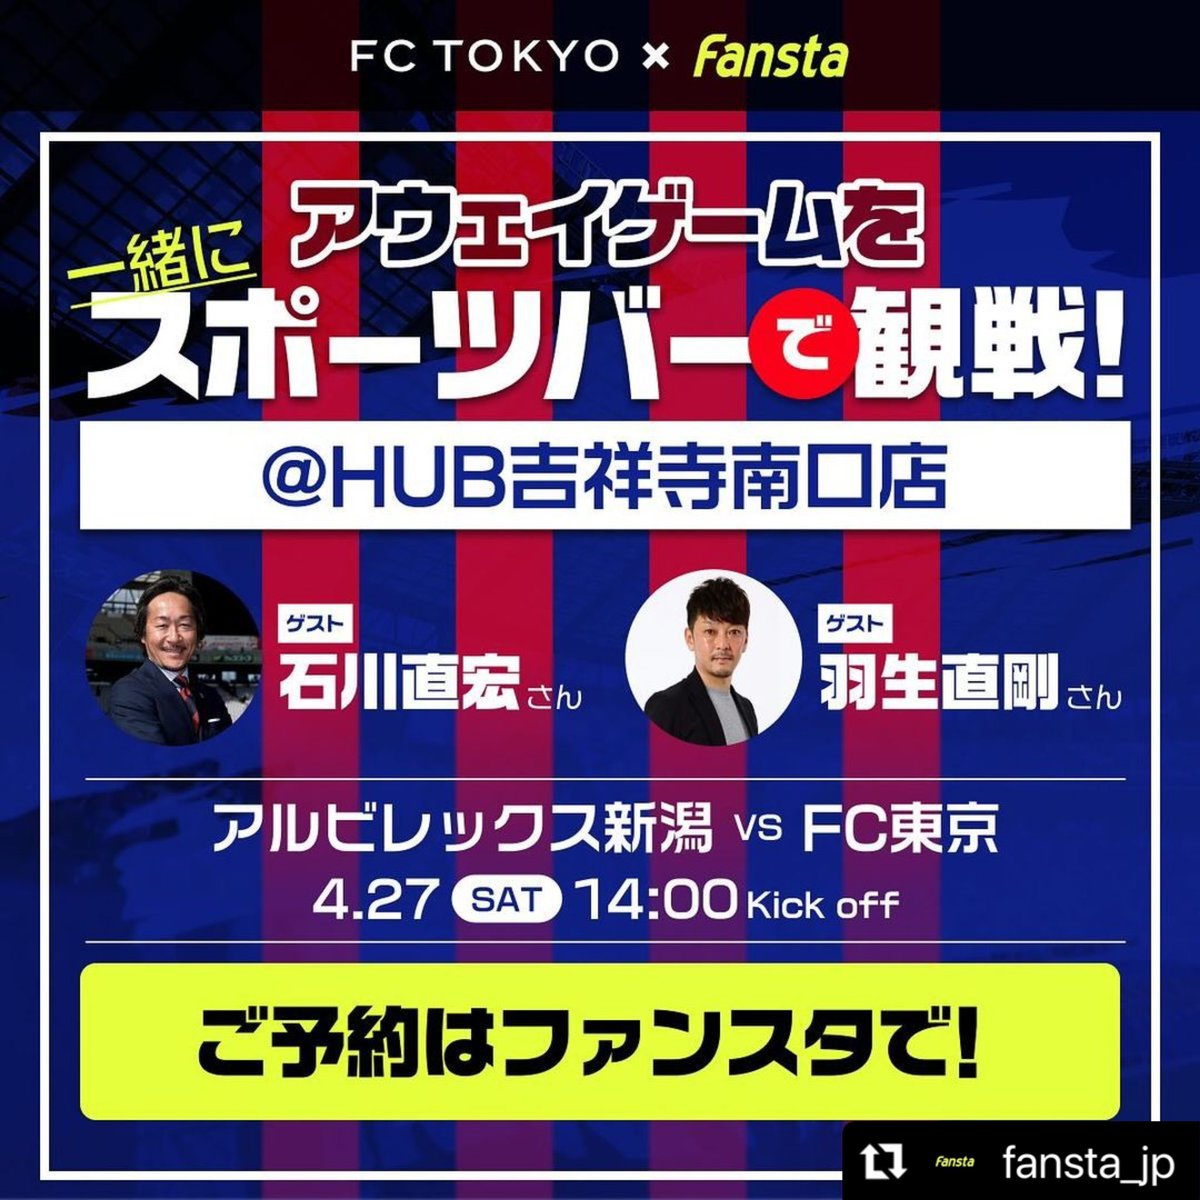 新潟戦はFansta 皆で勝利の美酒を🍻 #fansta @fansta_jp #fctokyo #FC東京 @fctokyoofficial